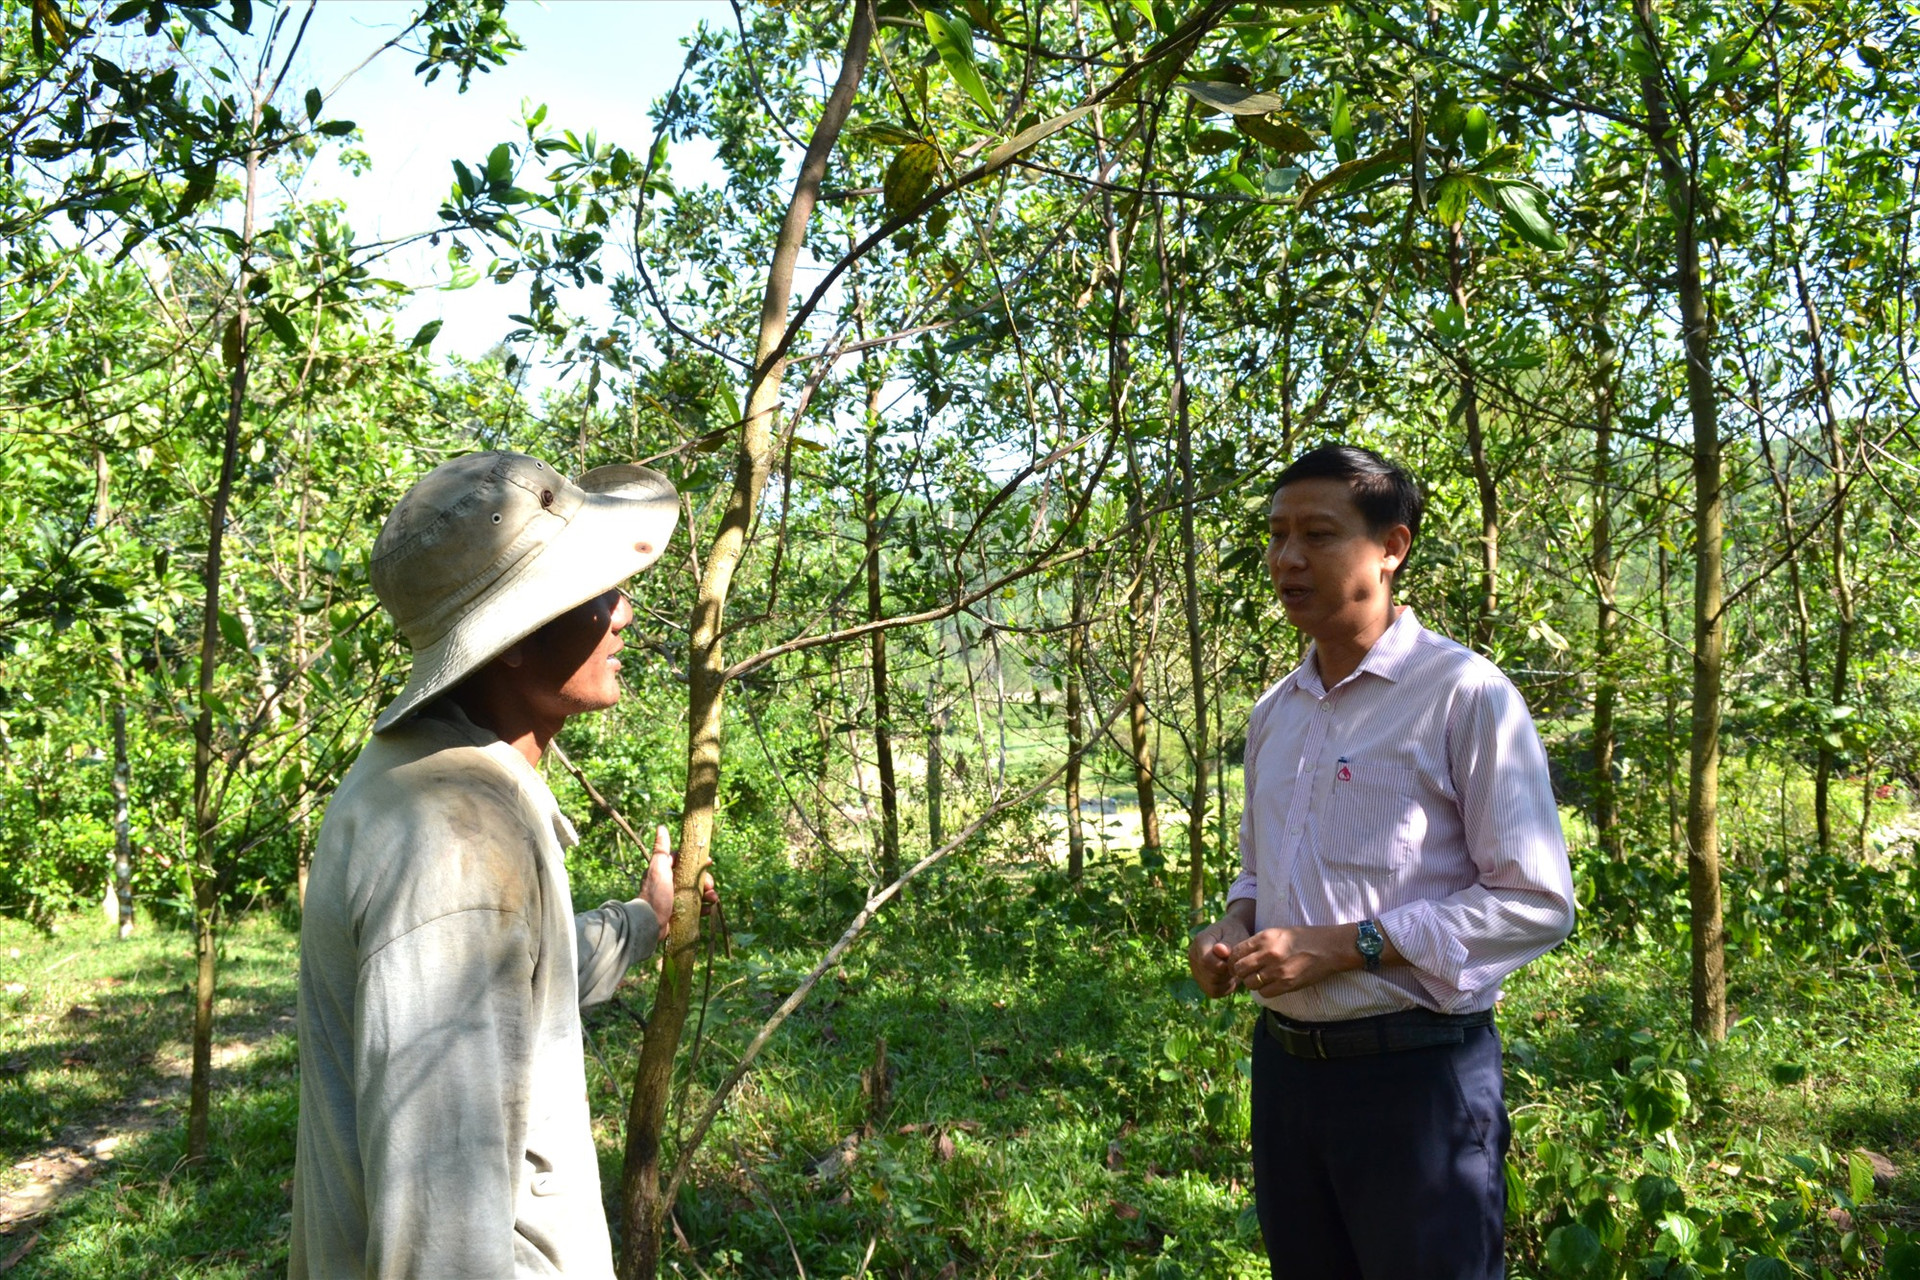 Tín dụng chính sách giúp người dân huyện Bắc rà My phát triển kinh tế rừng hiệu quả. Ảnh: Q.VIỆT